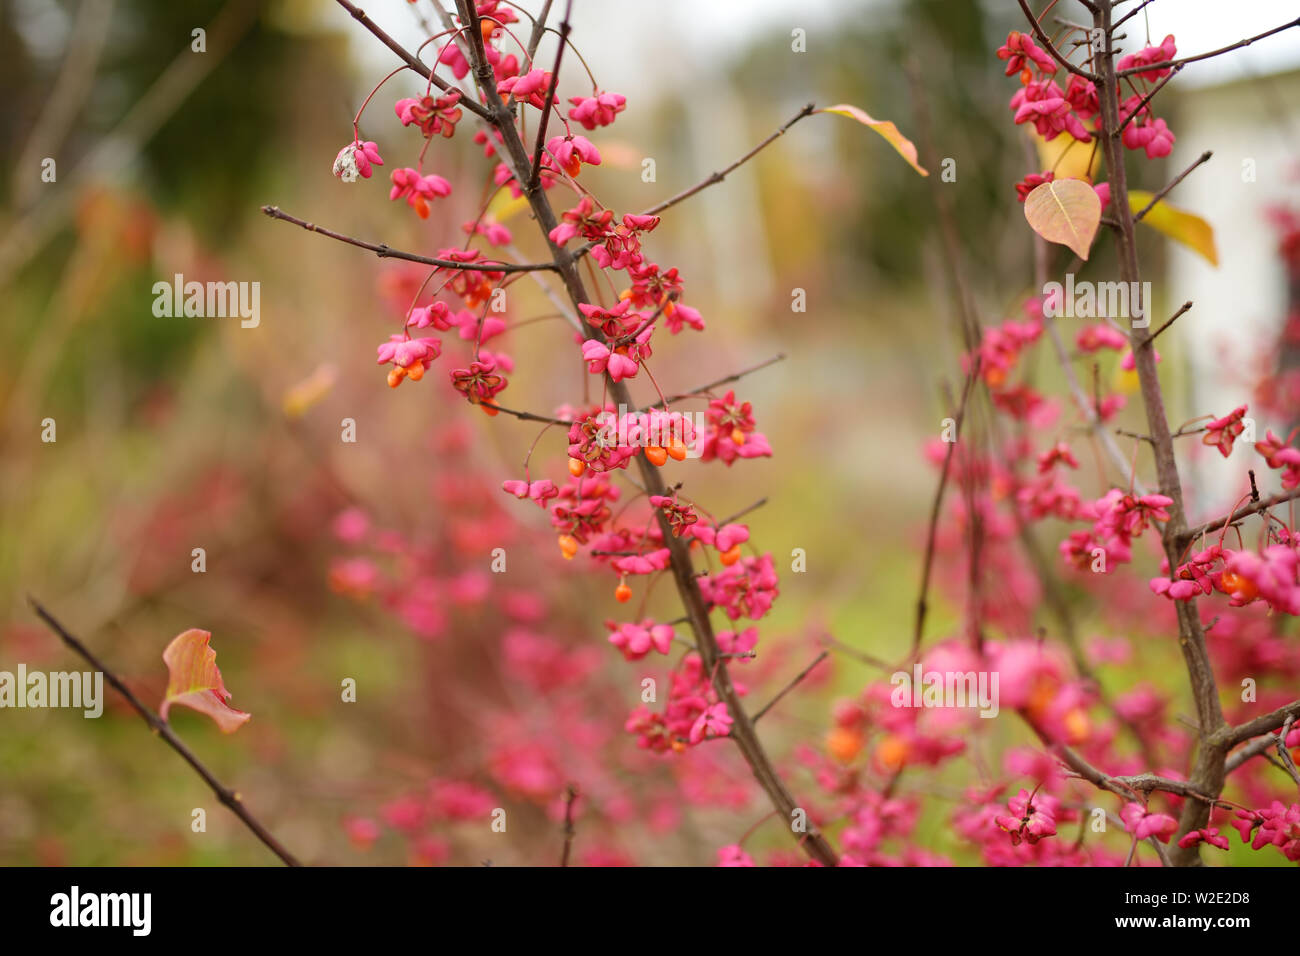 Leuchtend rote Früchte der Euonymus alatus. Winged Spindel, geflügelte euonymus oder brennenden Busch. Schönes helles Herbst Vegetation. Stockfoto